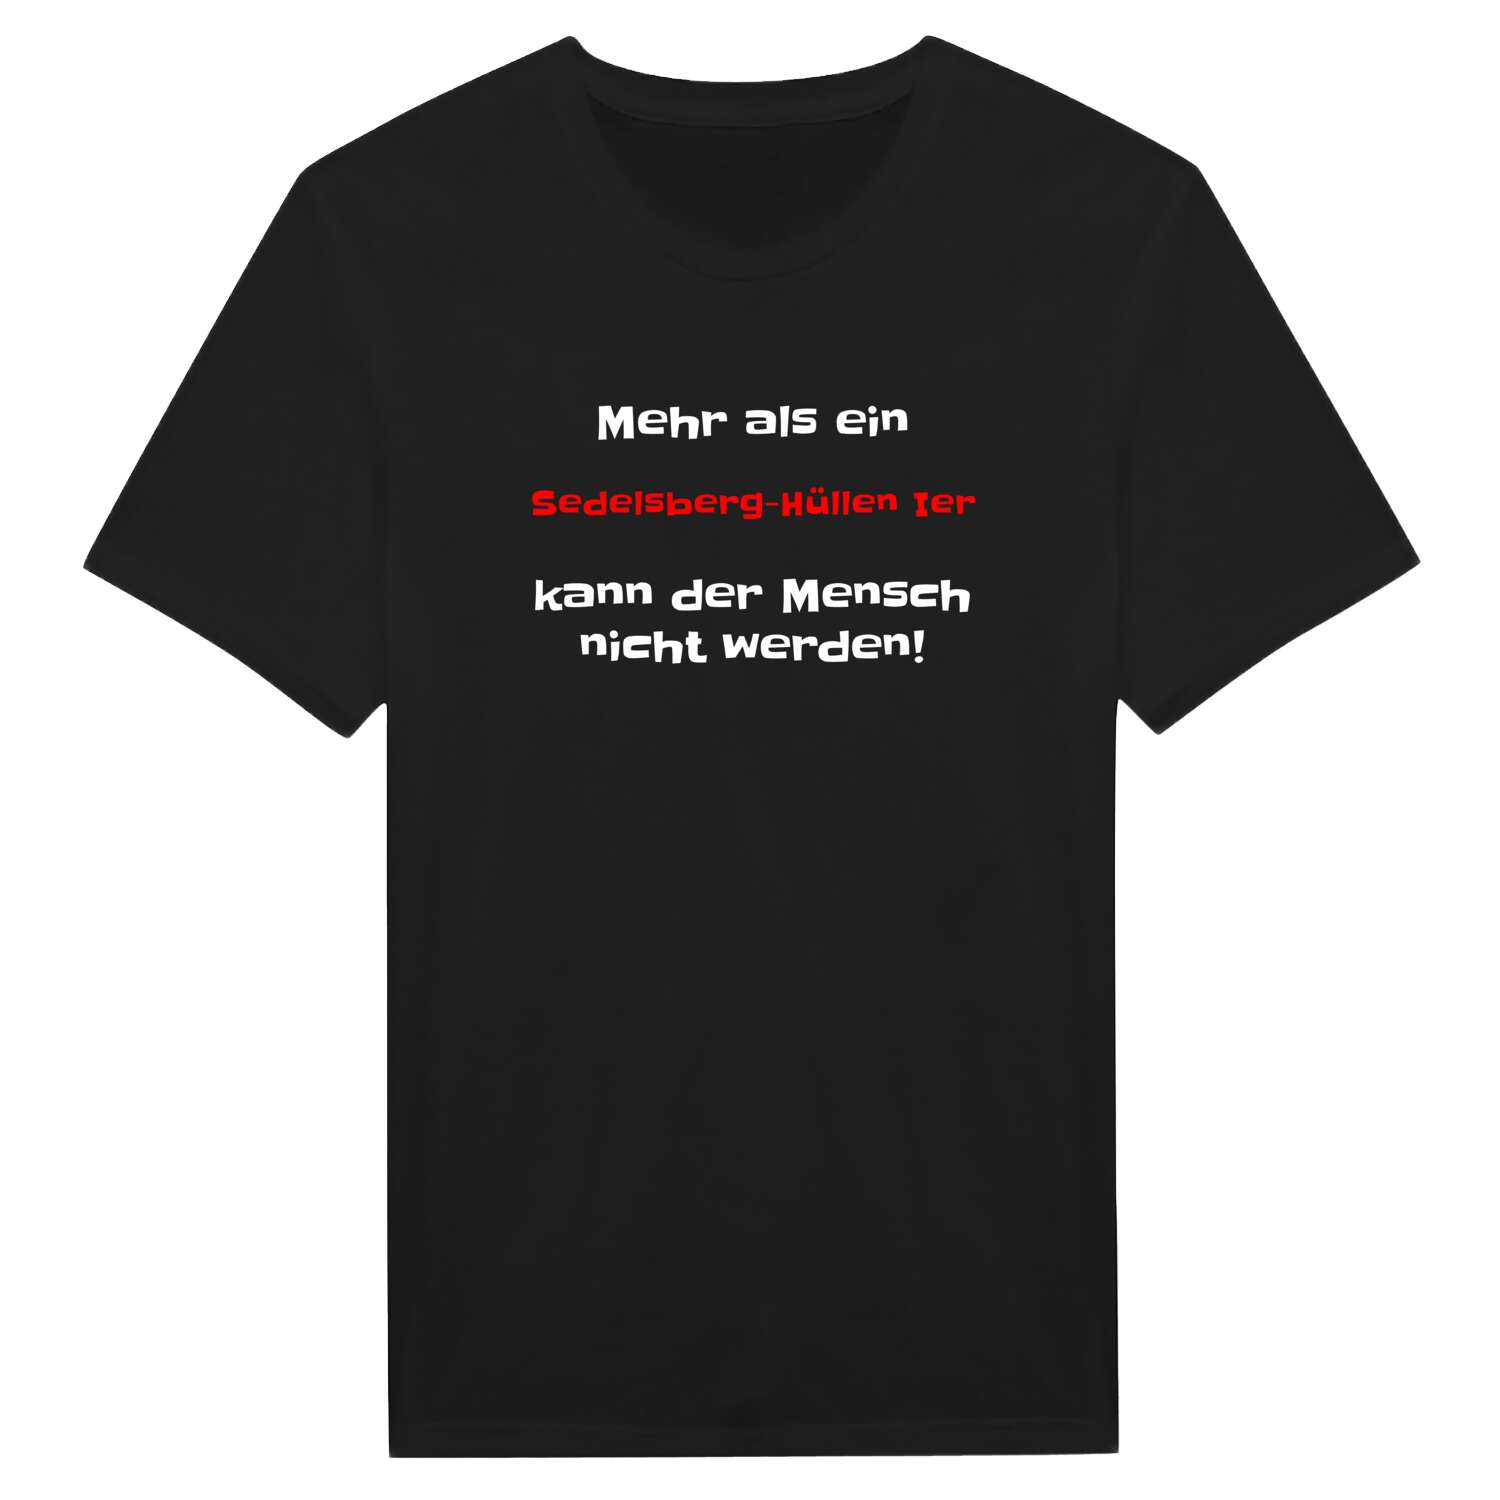 Sedelsberg-Hüllen I T-Shirt »Mehr als ein«